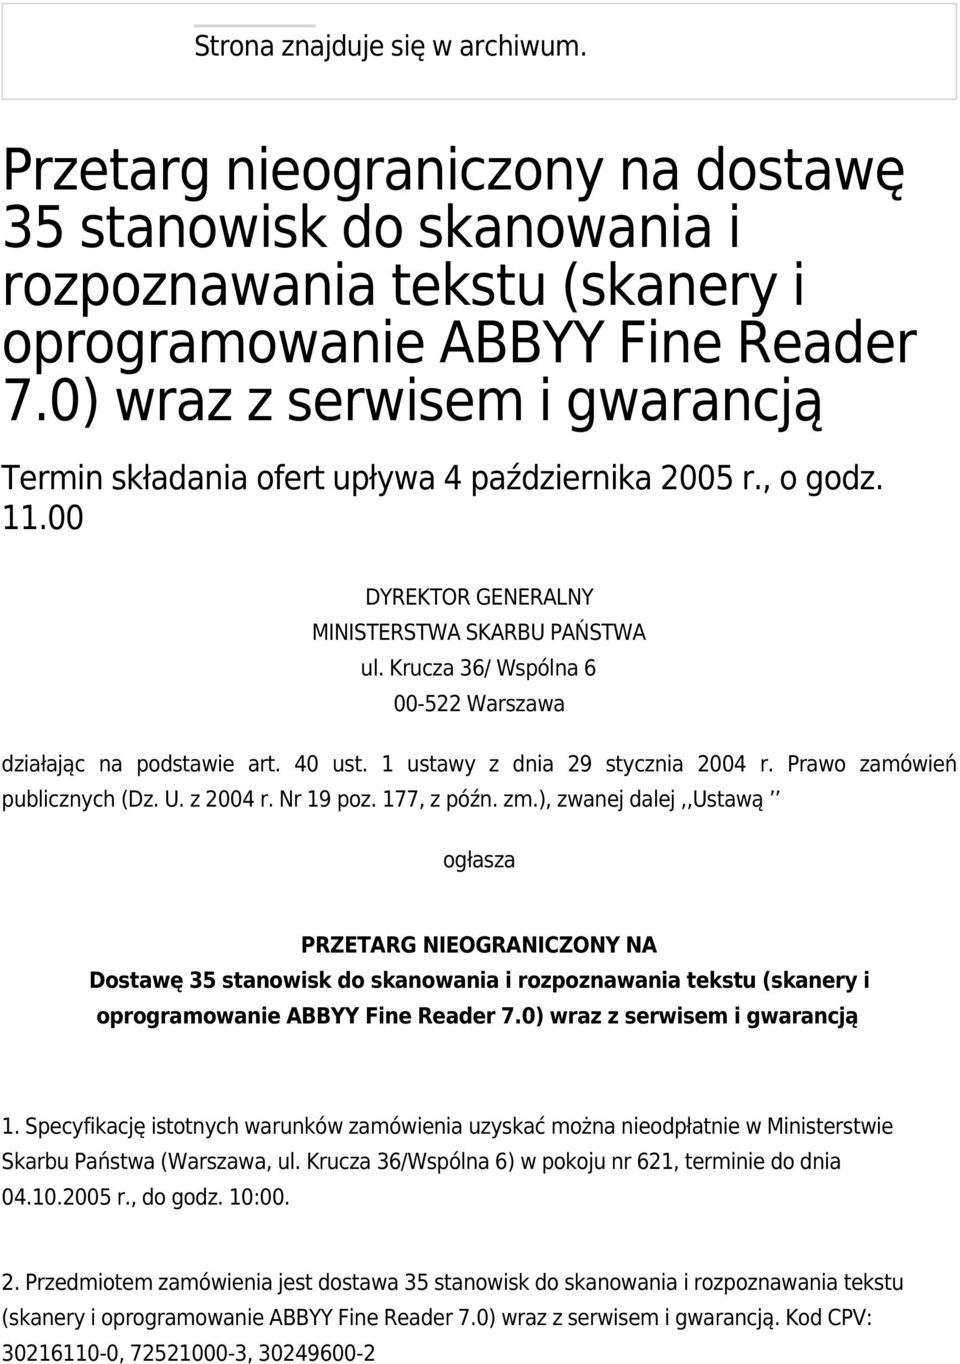 Krucza 36/ Wspólna 6 00-522 Warszawa działając na podstawie art. 40 ust. 1 ustawy z dnia 29 stycznia 2004 r. Prawo zamówień publicznych (Dz. U. z 2004 r. Nr 19 poz. 177, z późn. zm.